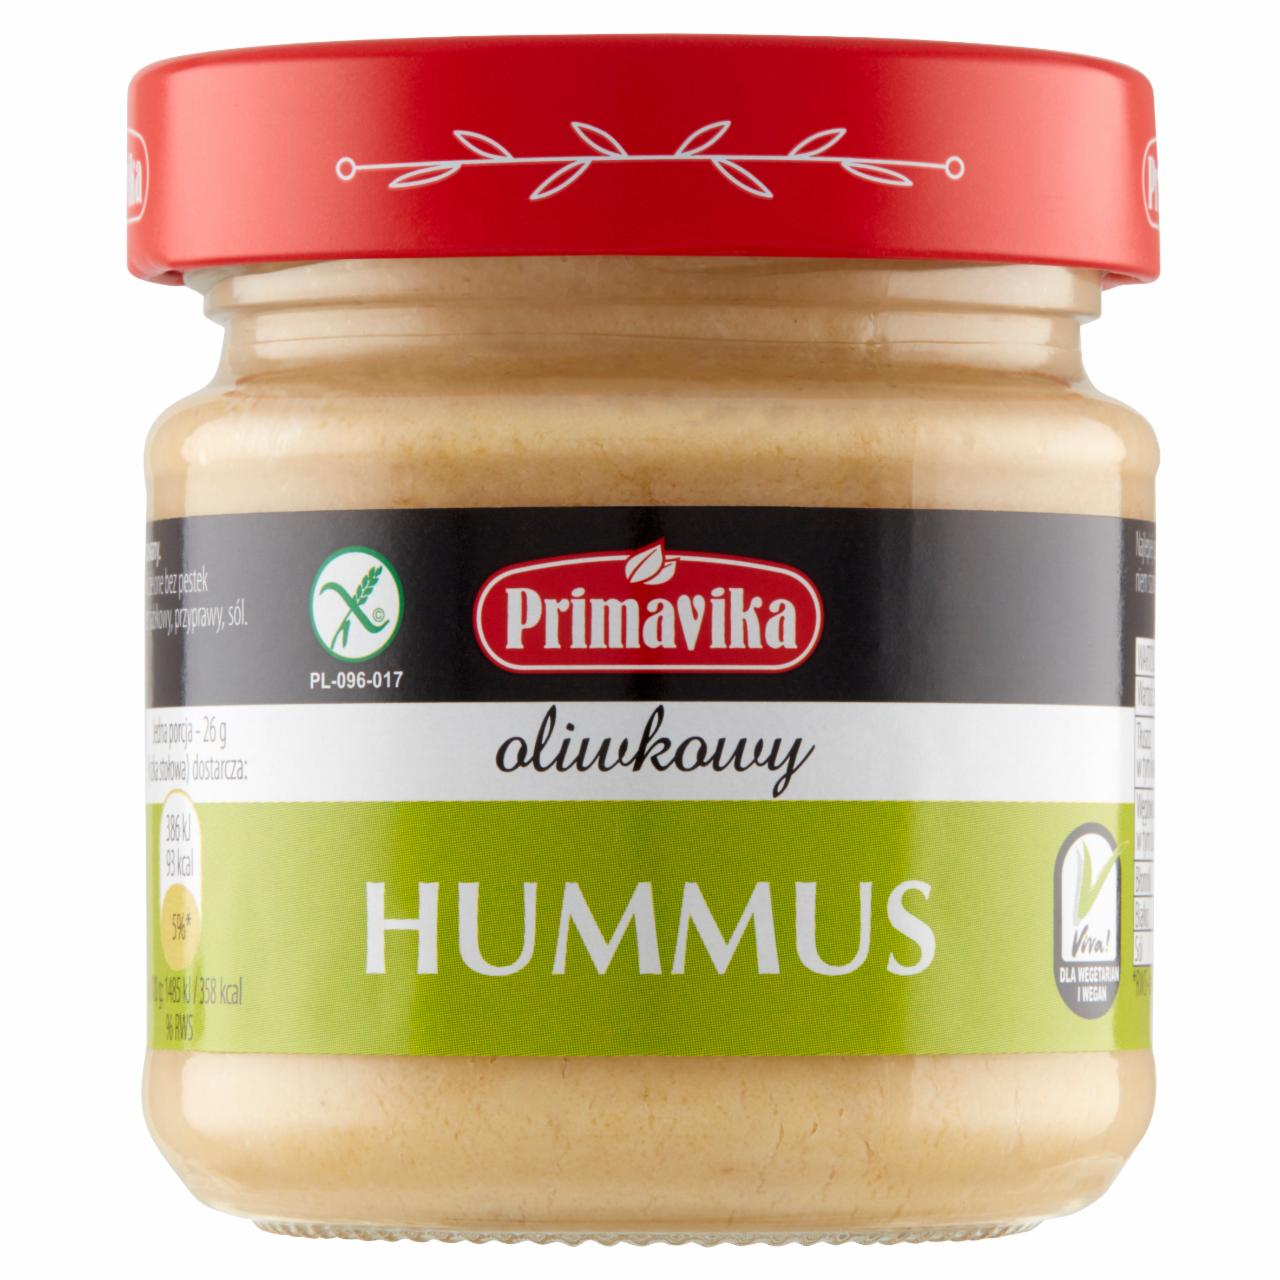 Zdjęcia - Primavika Hummus oliwkowy 160 g